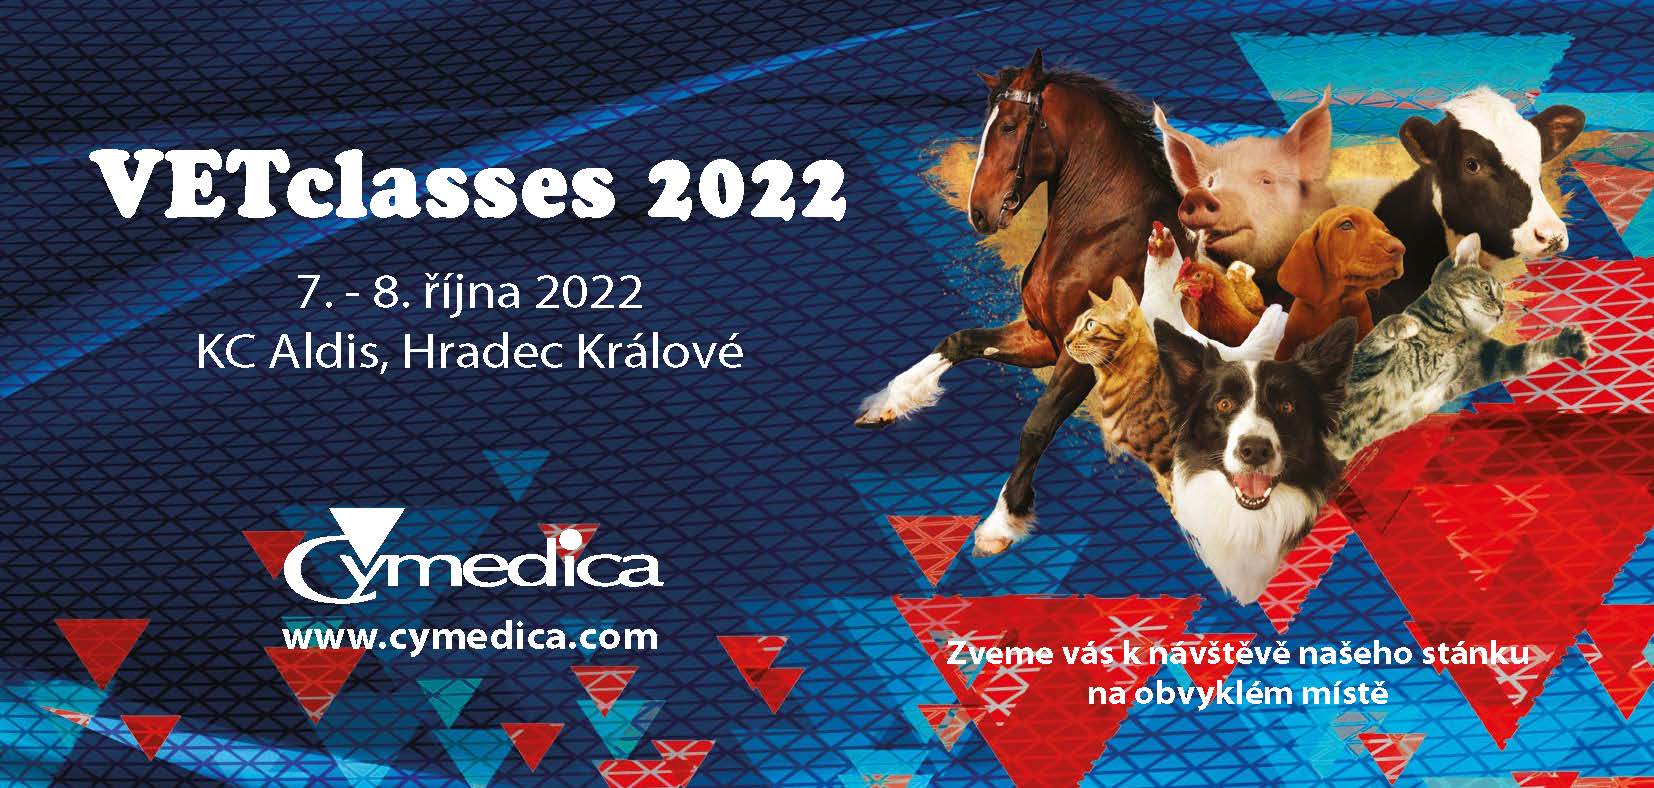 VETCLASSES 2022 - Cymedica.com